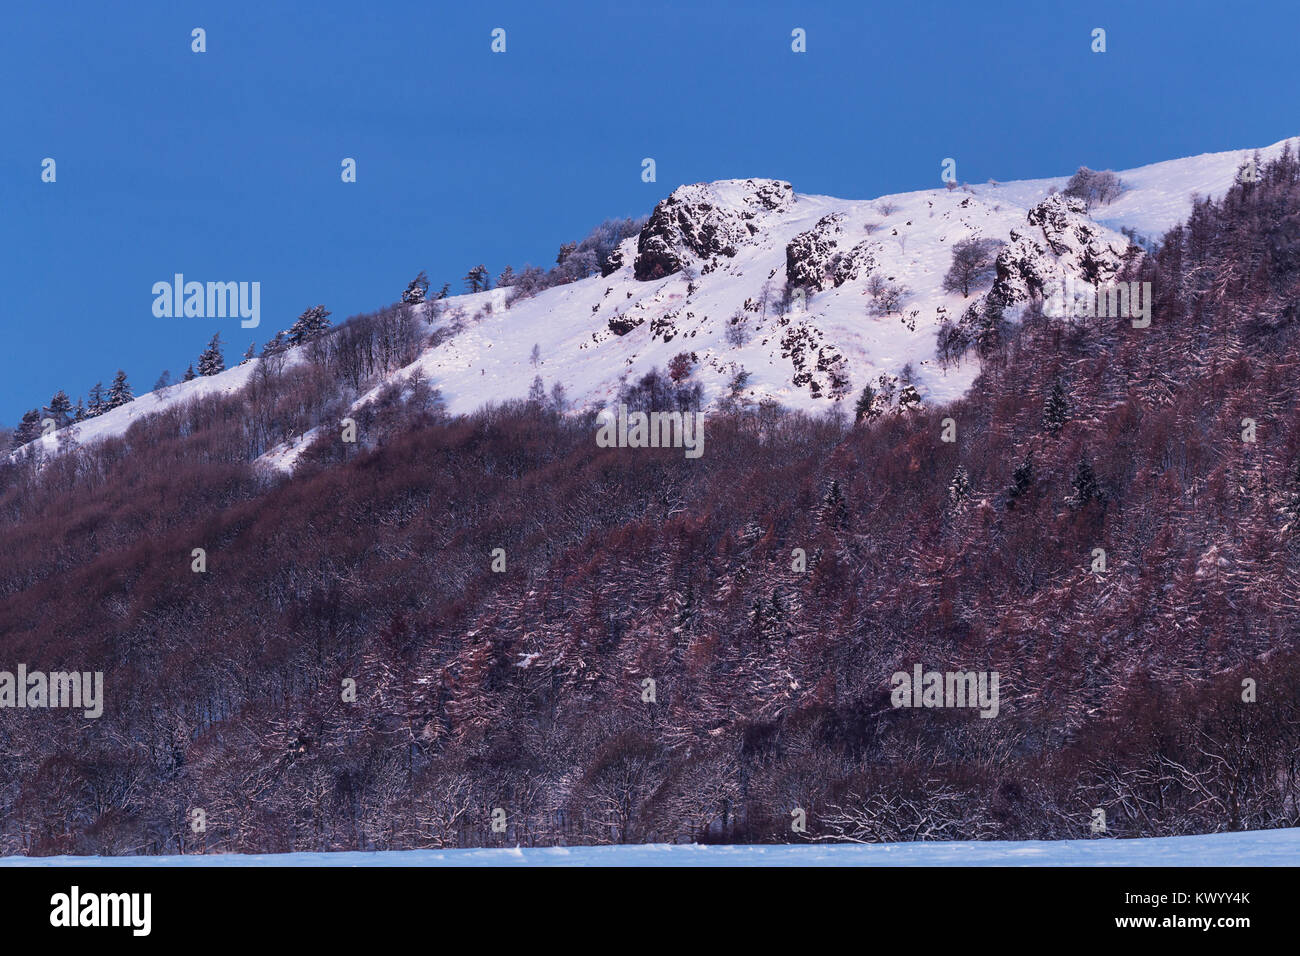 Sul lato meridionale della collina Wrekin sumit roccioso coperto di neve in inverno. Foto Stock